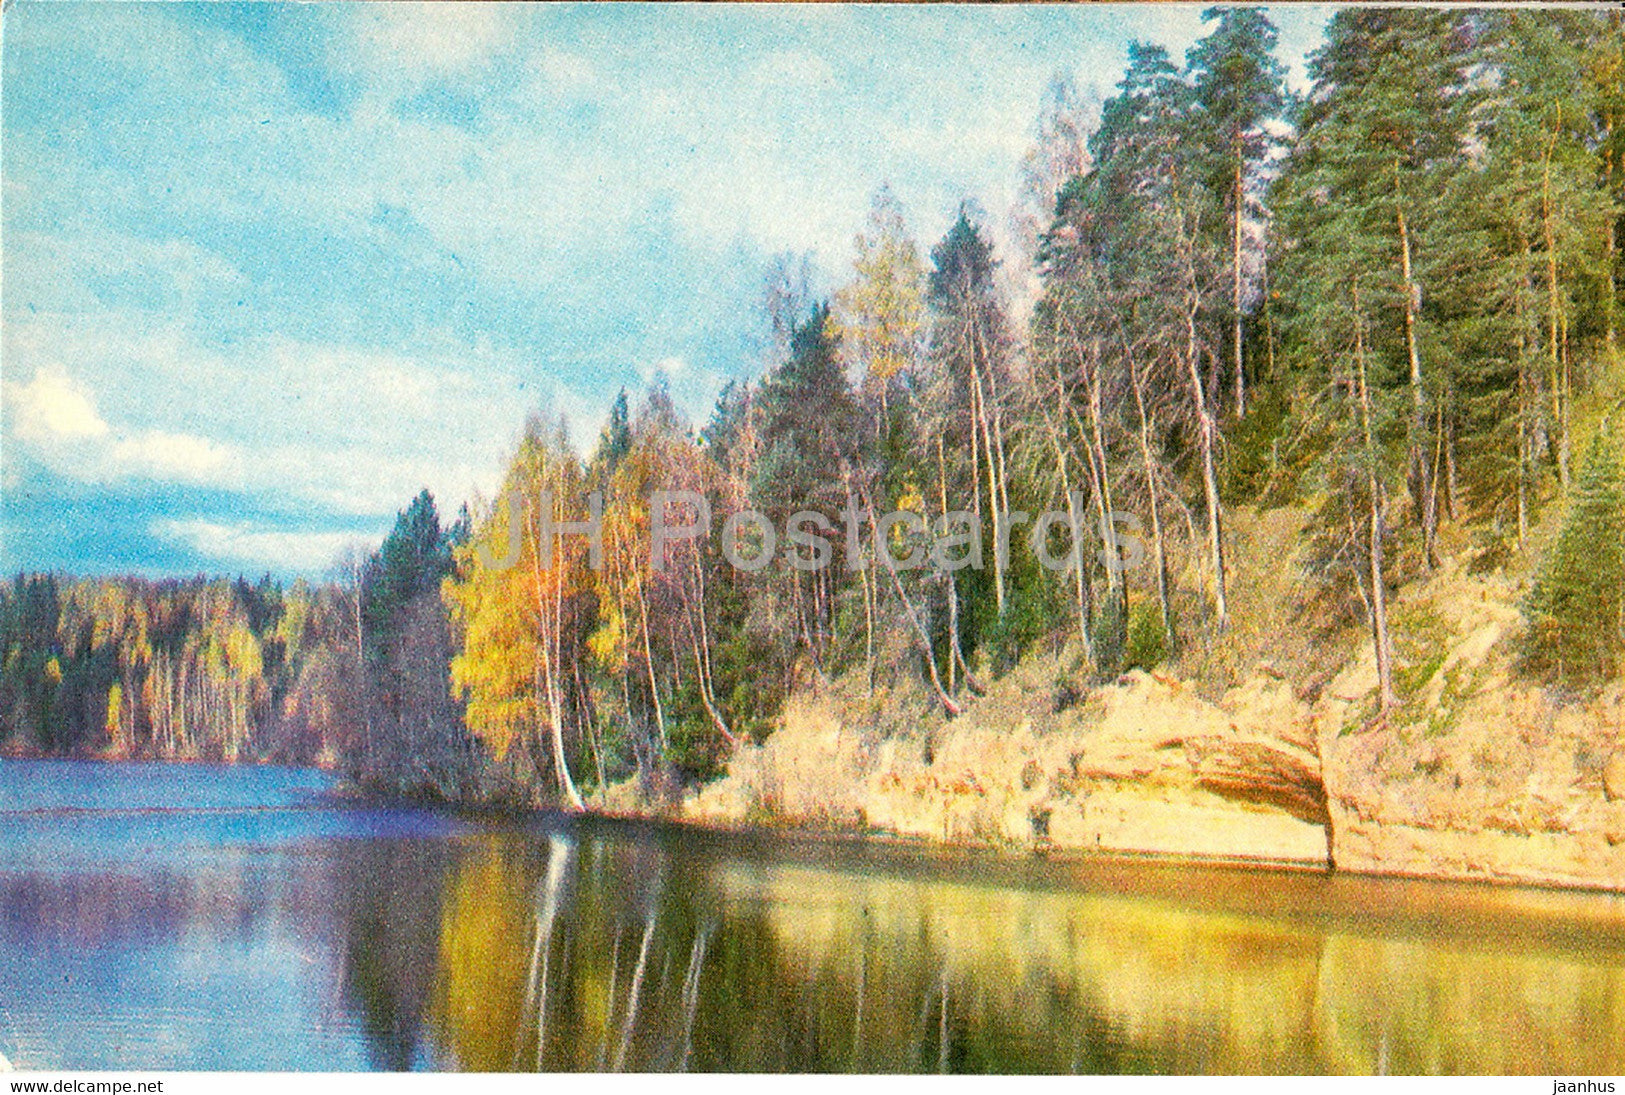 The Gauja National Park - Reservoir of Brasla - 1976 - Latvia USSR - unused - JH Postcards